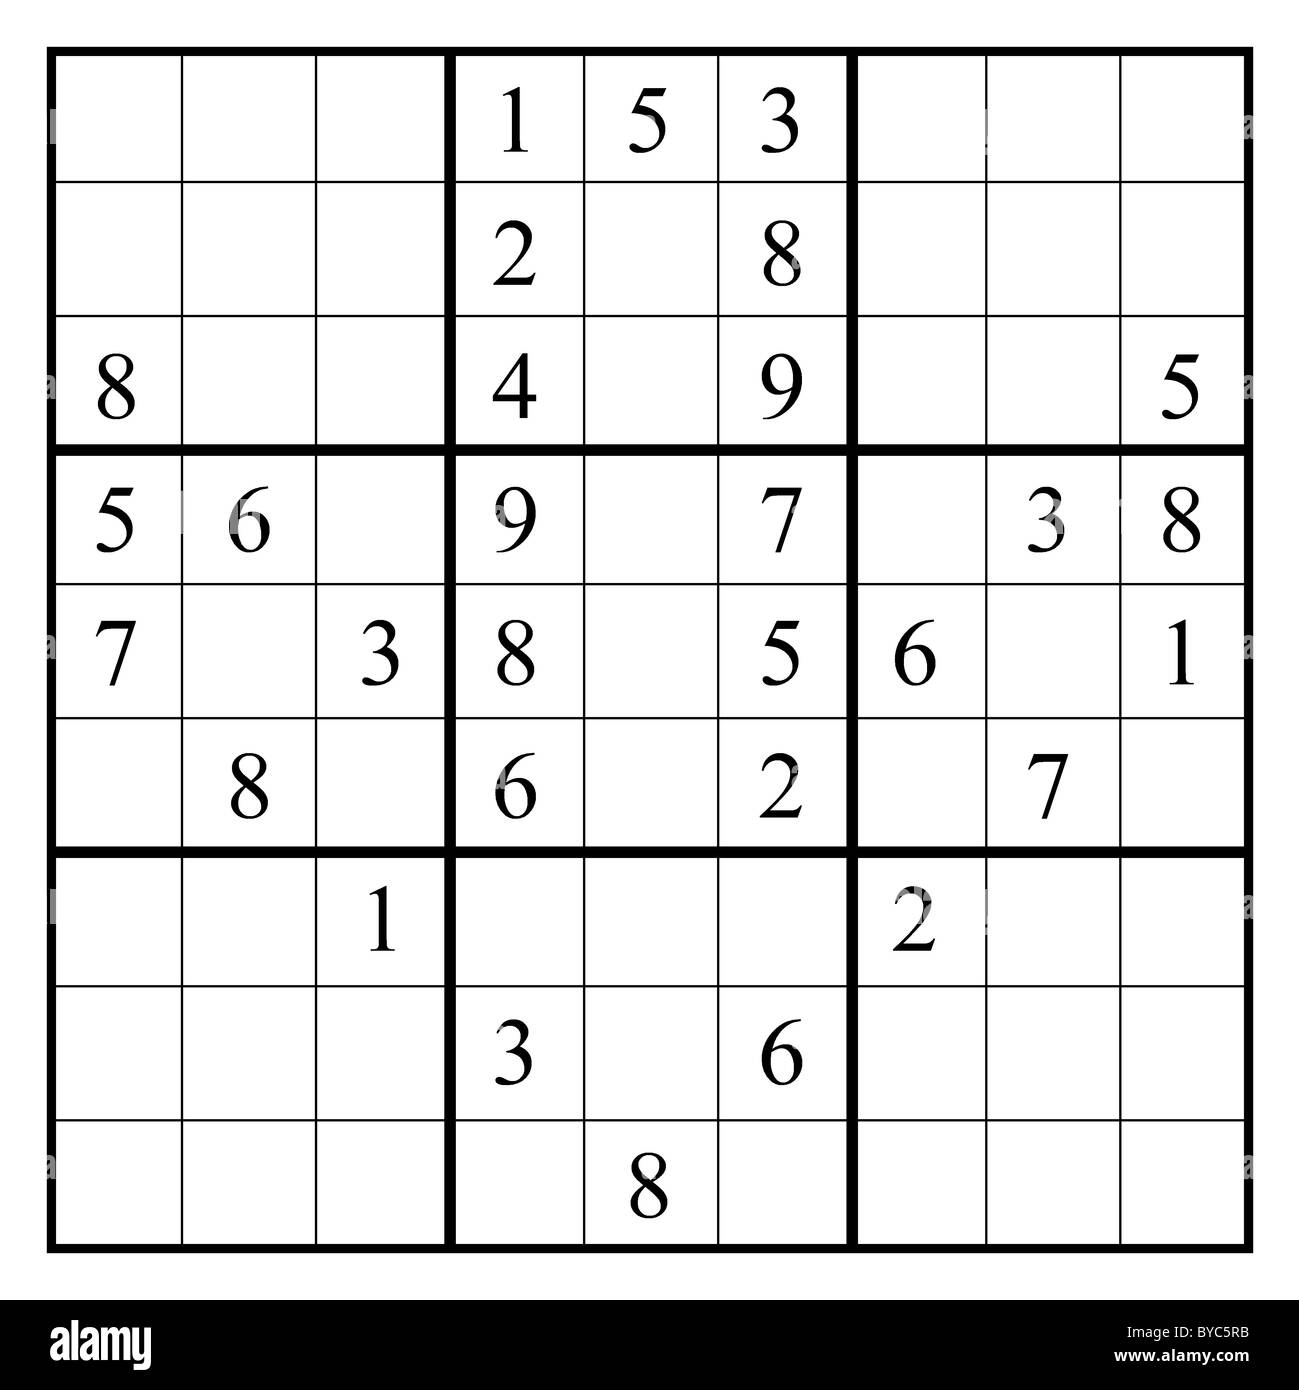 Dispositivo di puntamento con un puzzle sudoku. Questo layout di sudoku fornisce una rivolta verso il basso la freccia. La soluzione è su Alamy come tramitec5RJ. Foto Stock